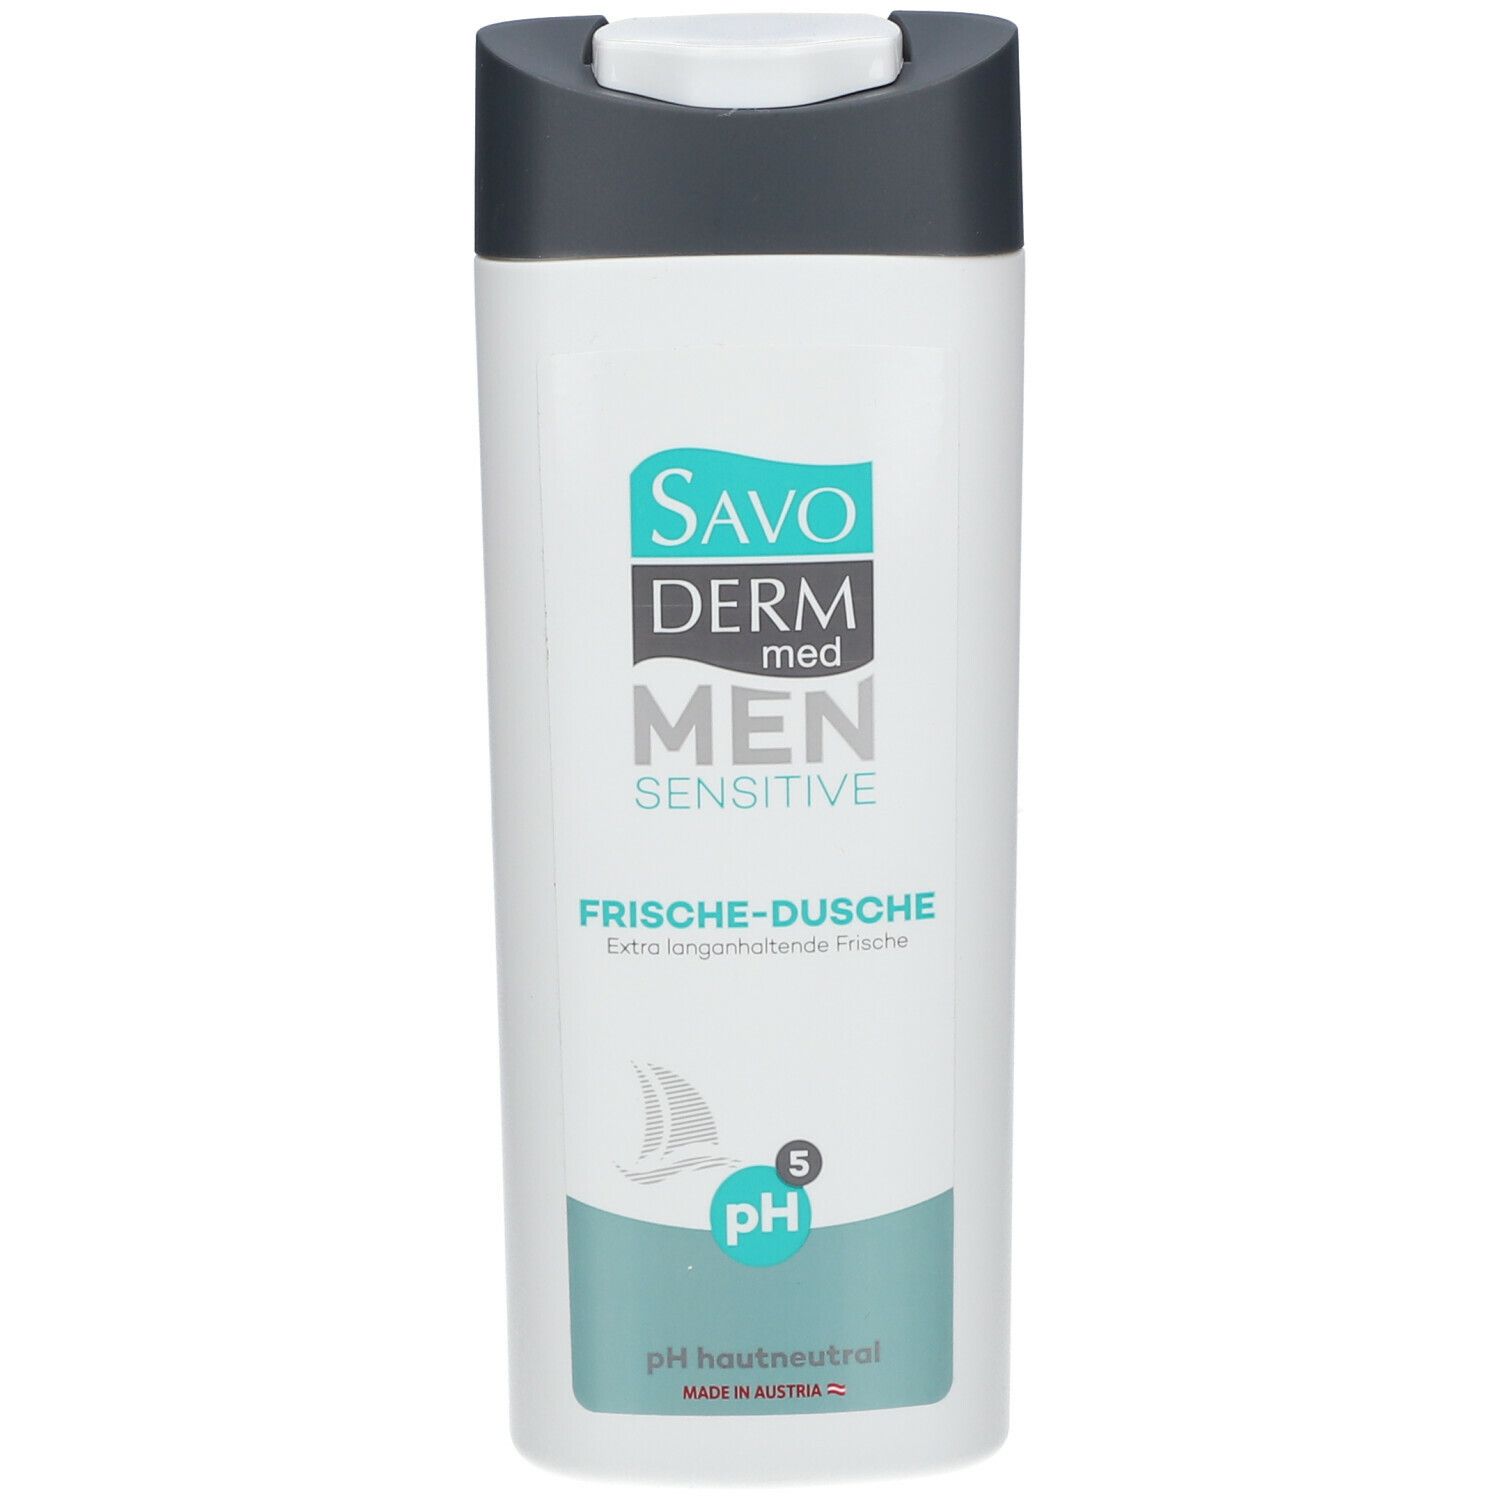 SAVODERM med MEN Sensitive Frische-Dusche